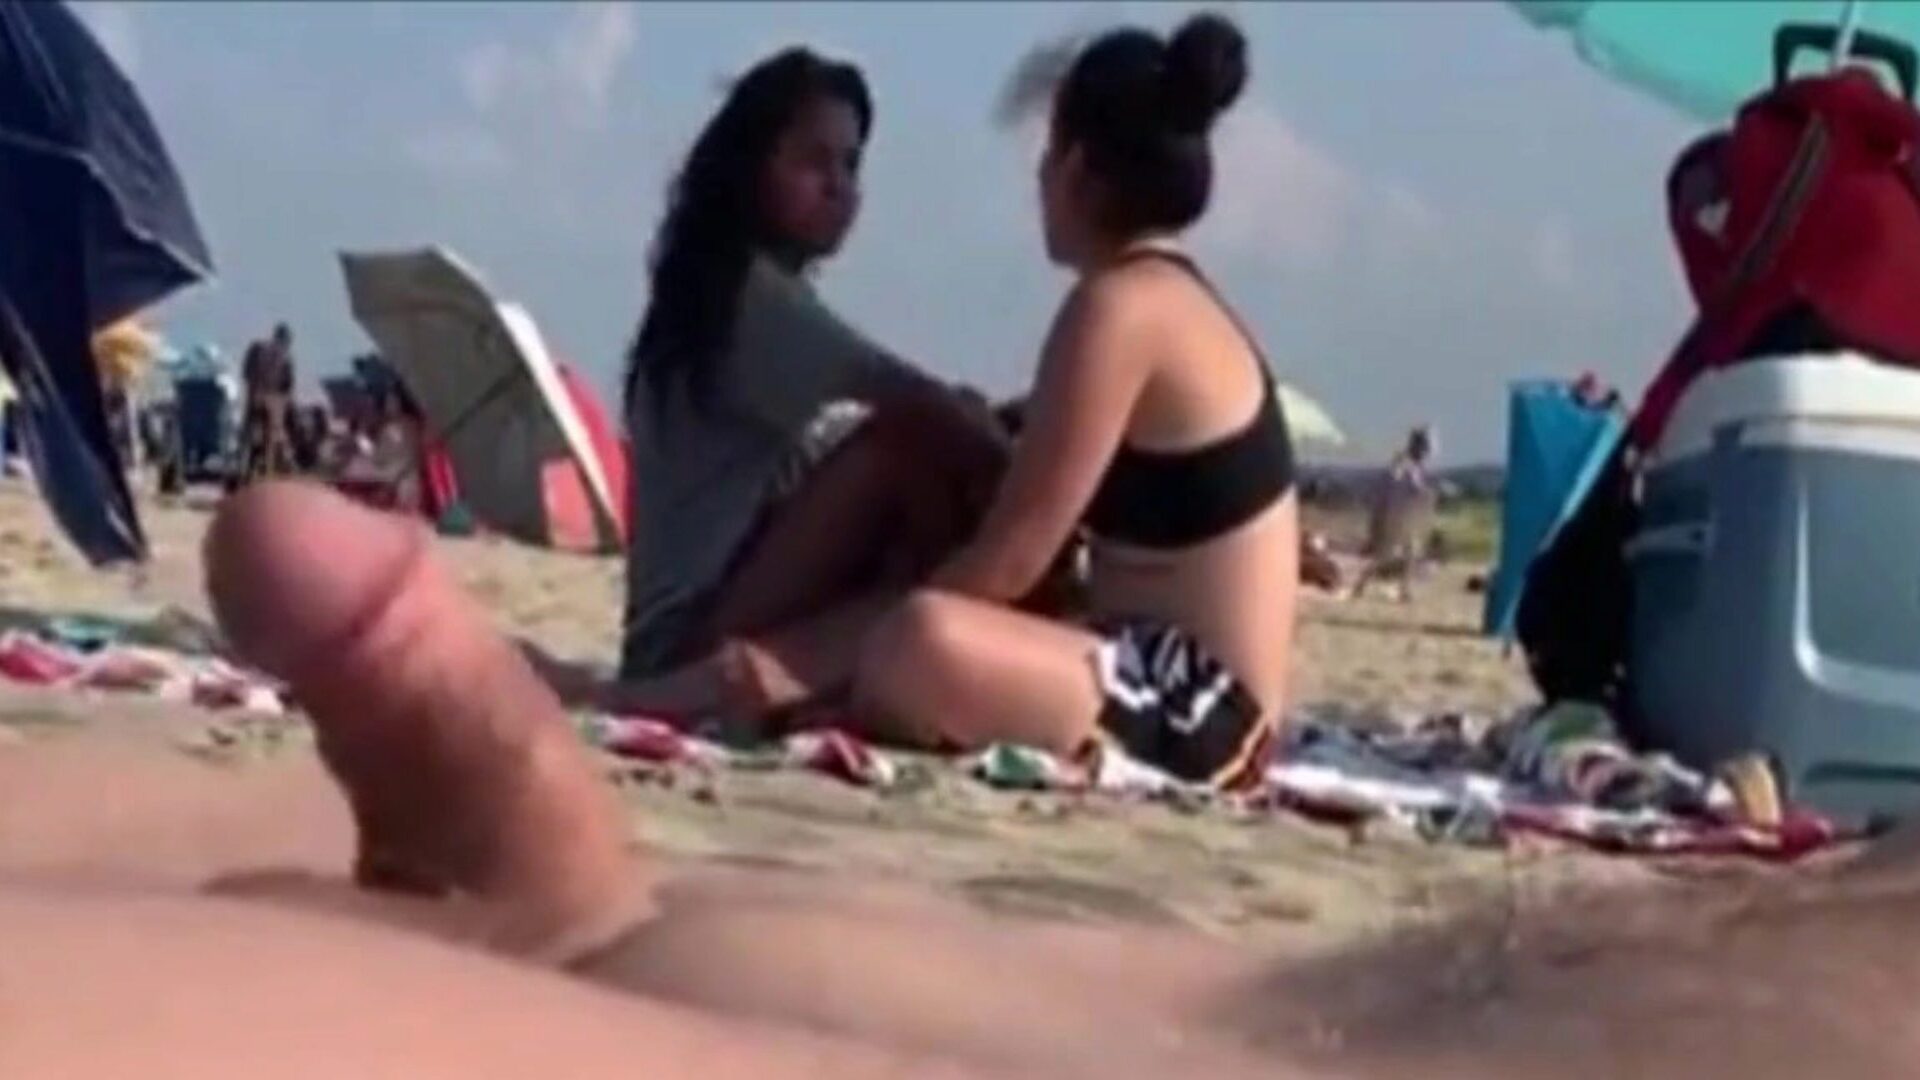 dos chicas observan mi erección en una playa pública dos bellezas que me atienden a mi wang déjalas ir ..